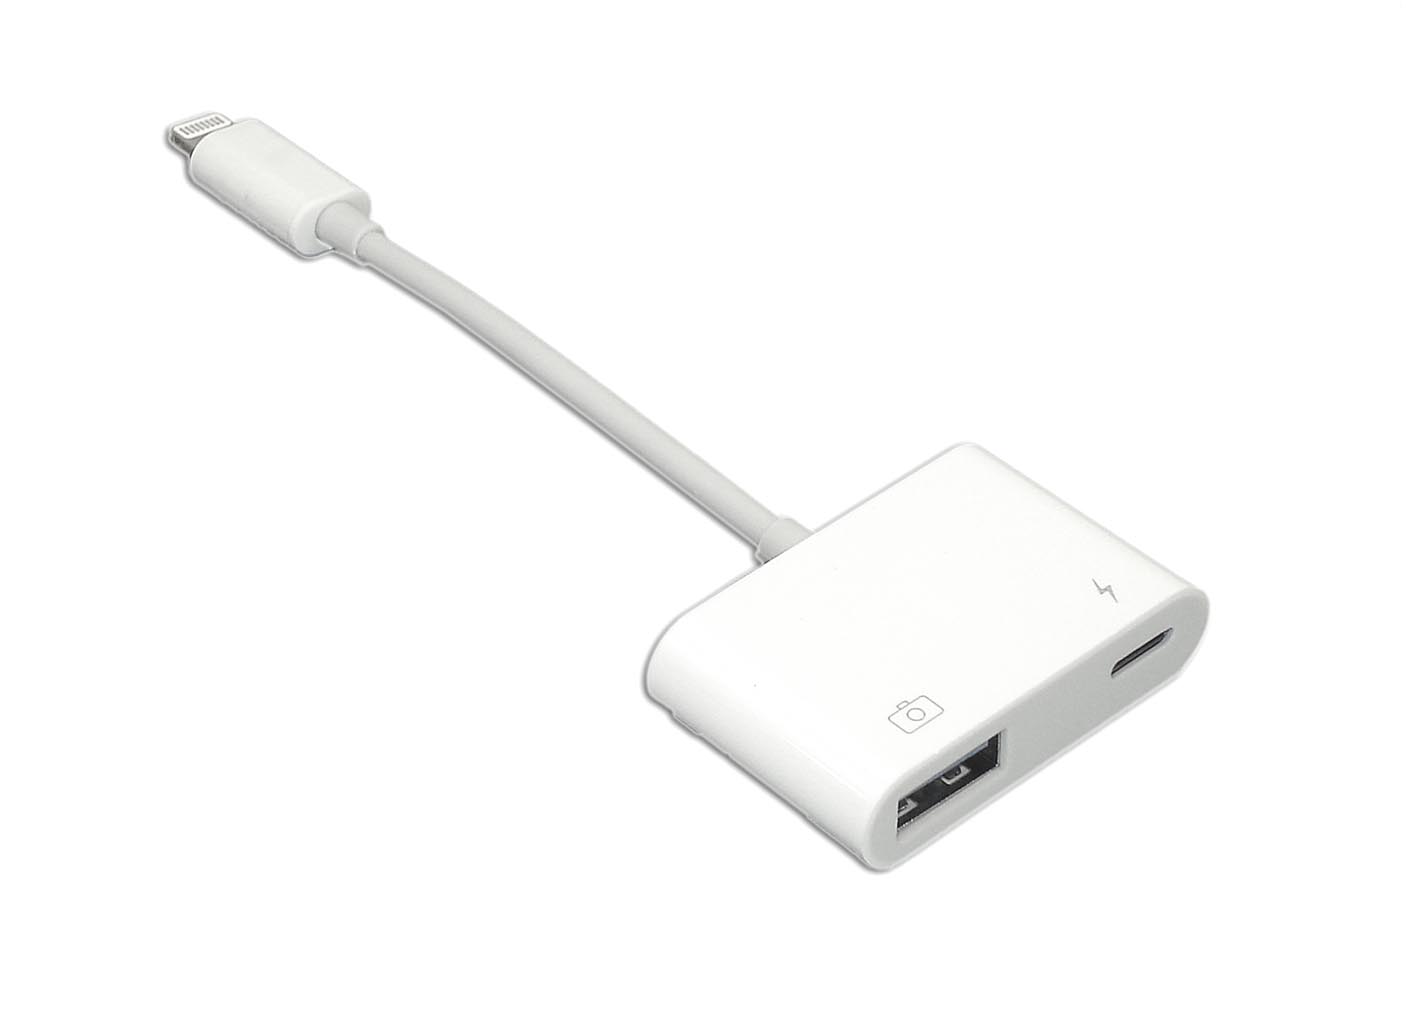 Apple Lightning to USB Camera Adapter